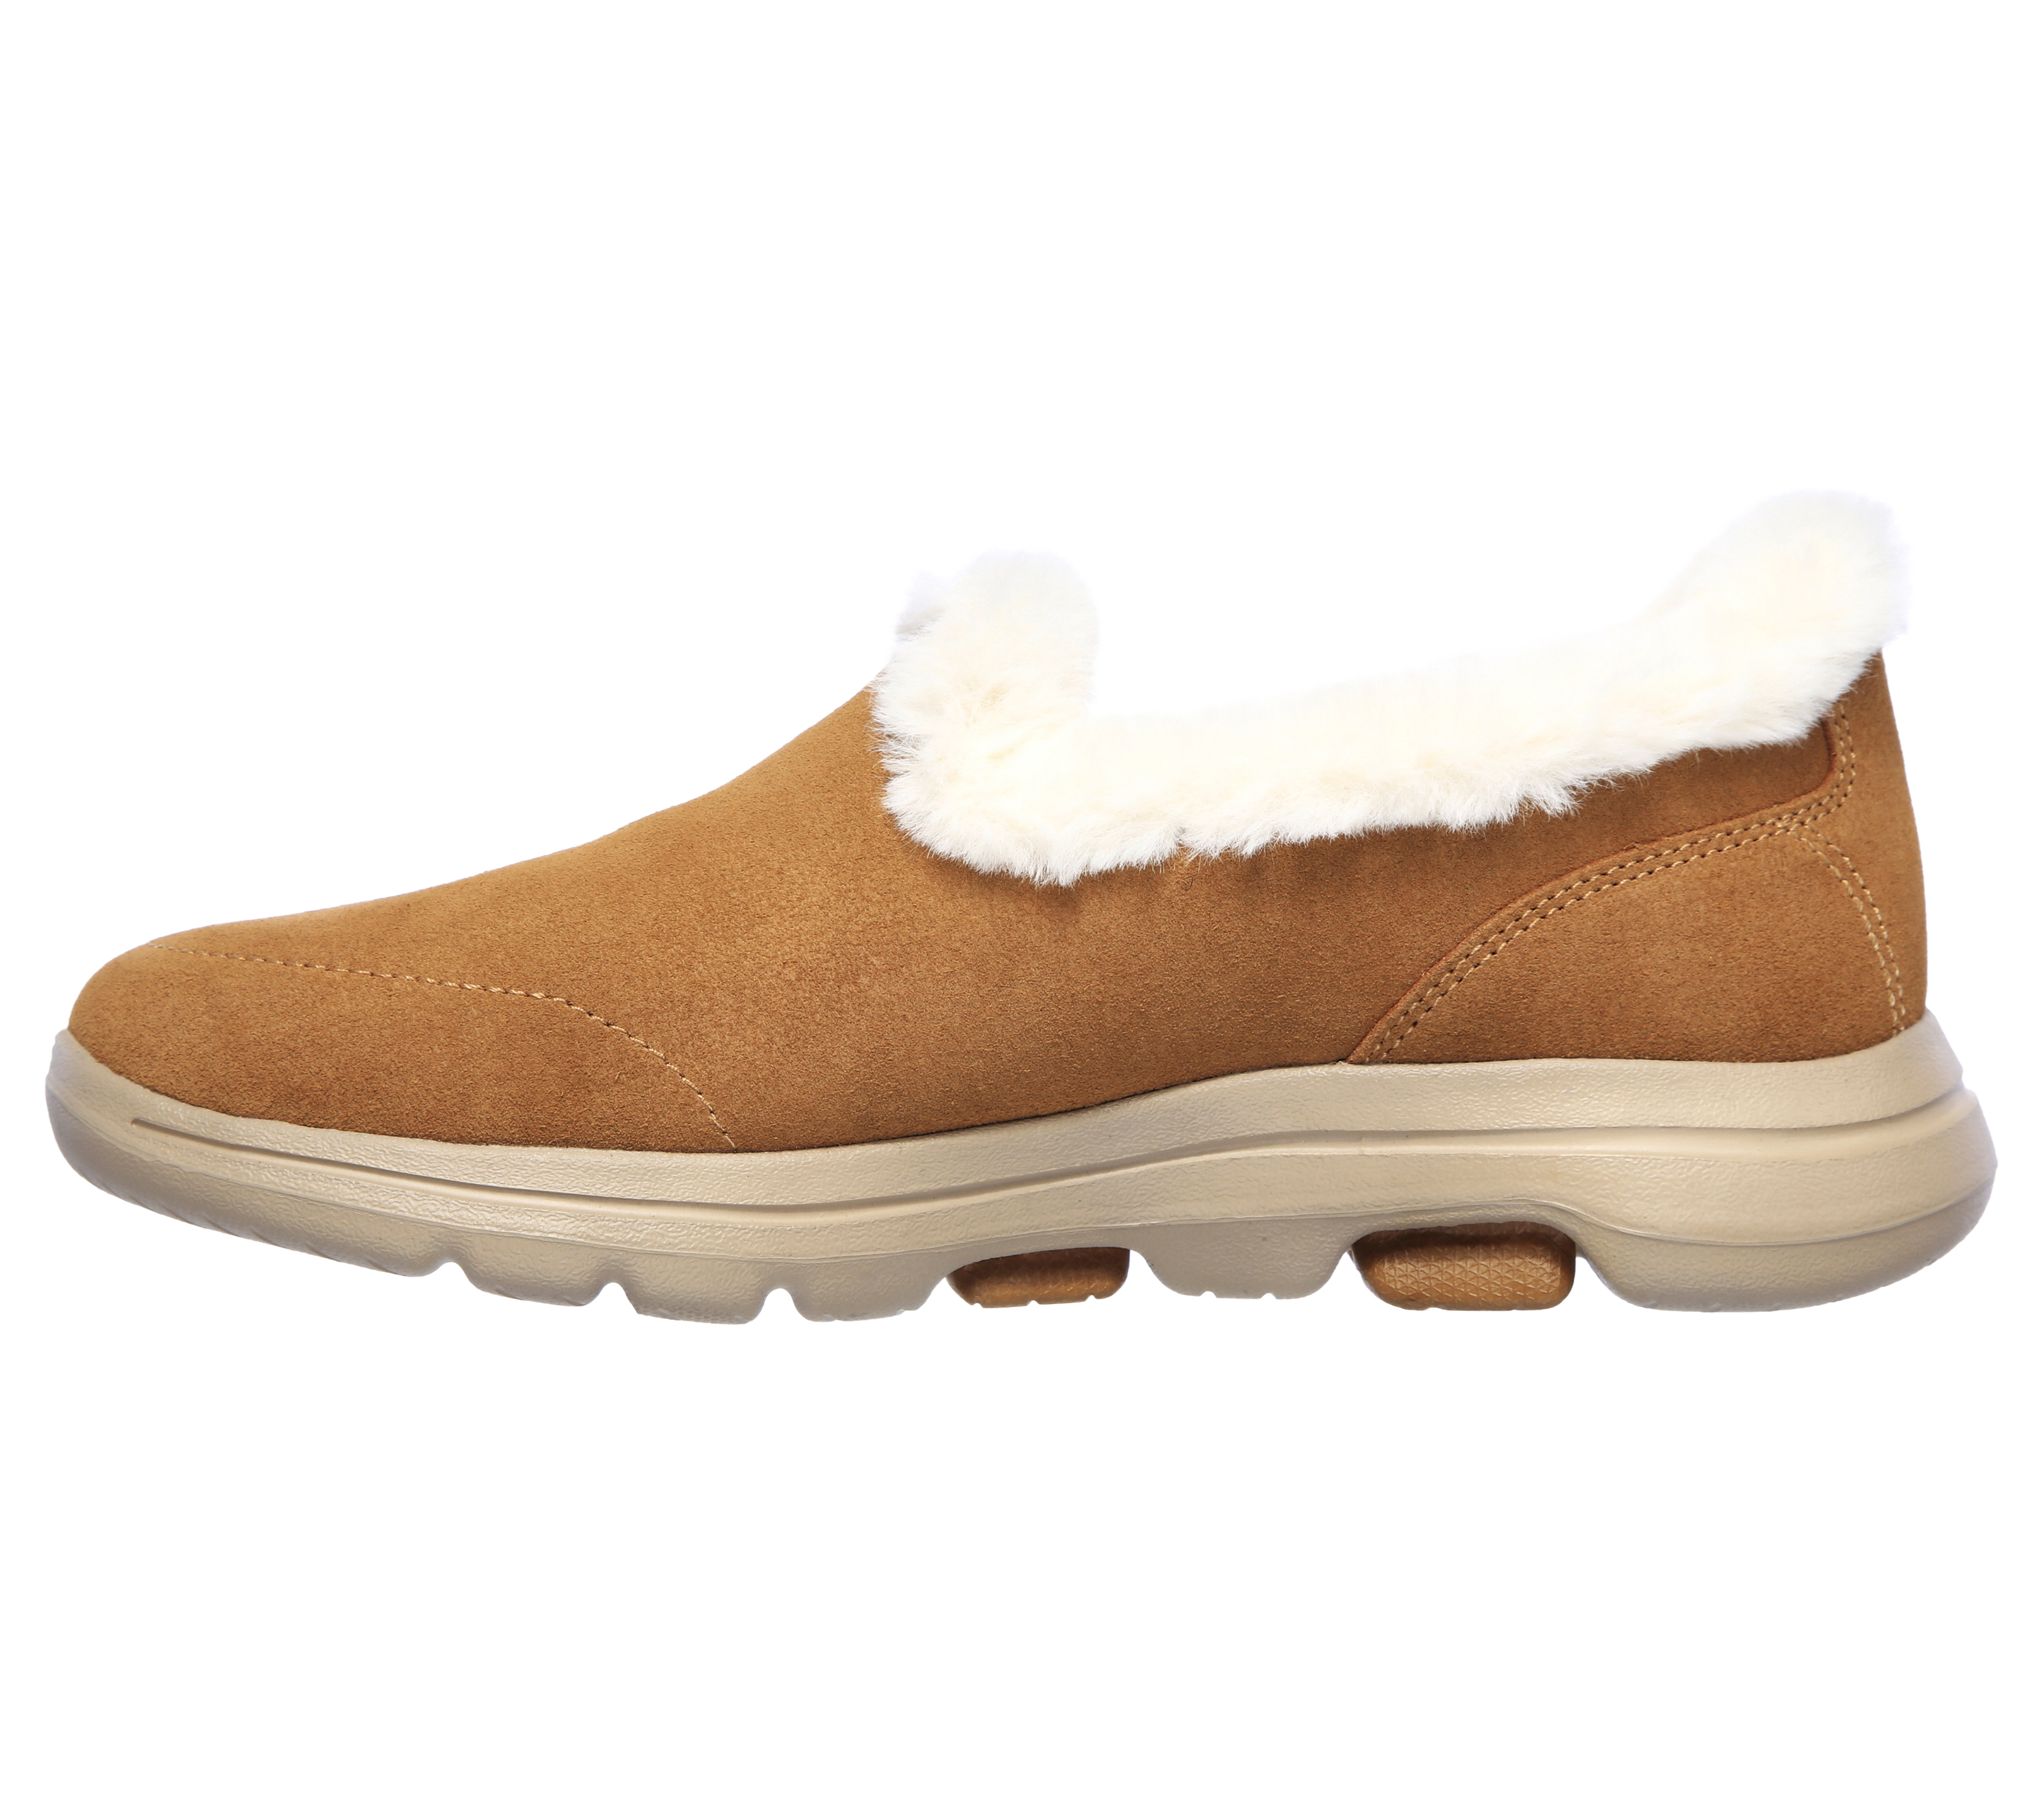 skechers gowalk suede faux fur shoes w/ memory form fit - comfy